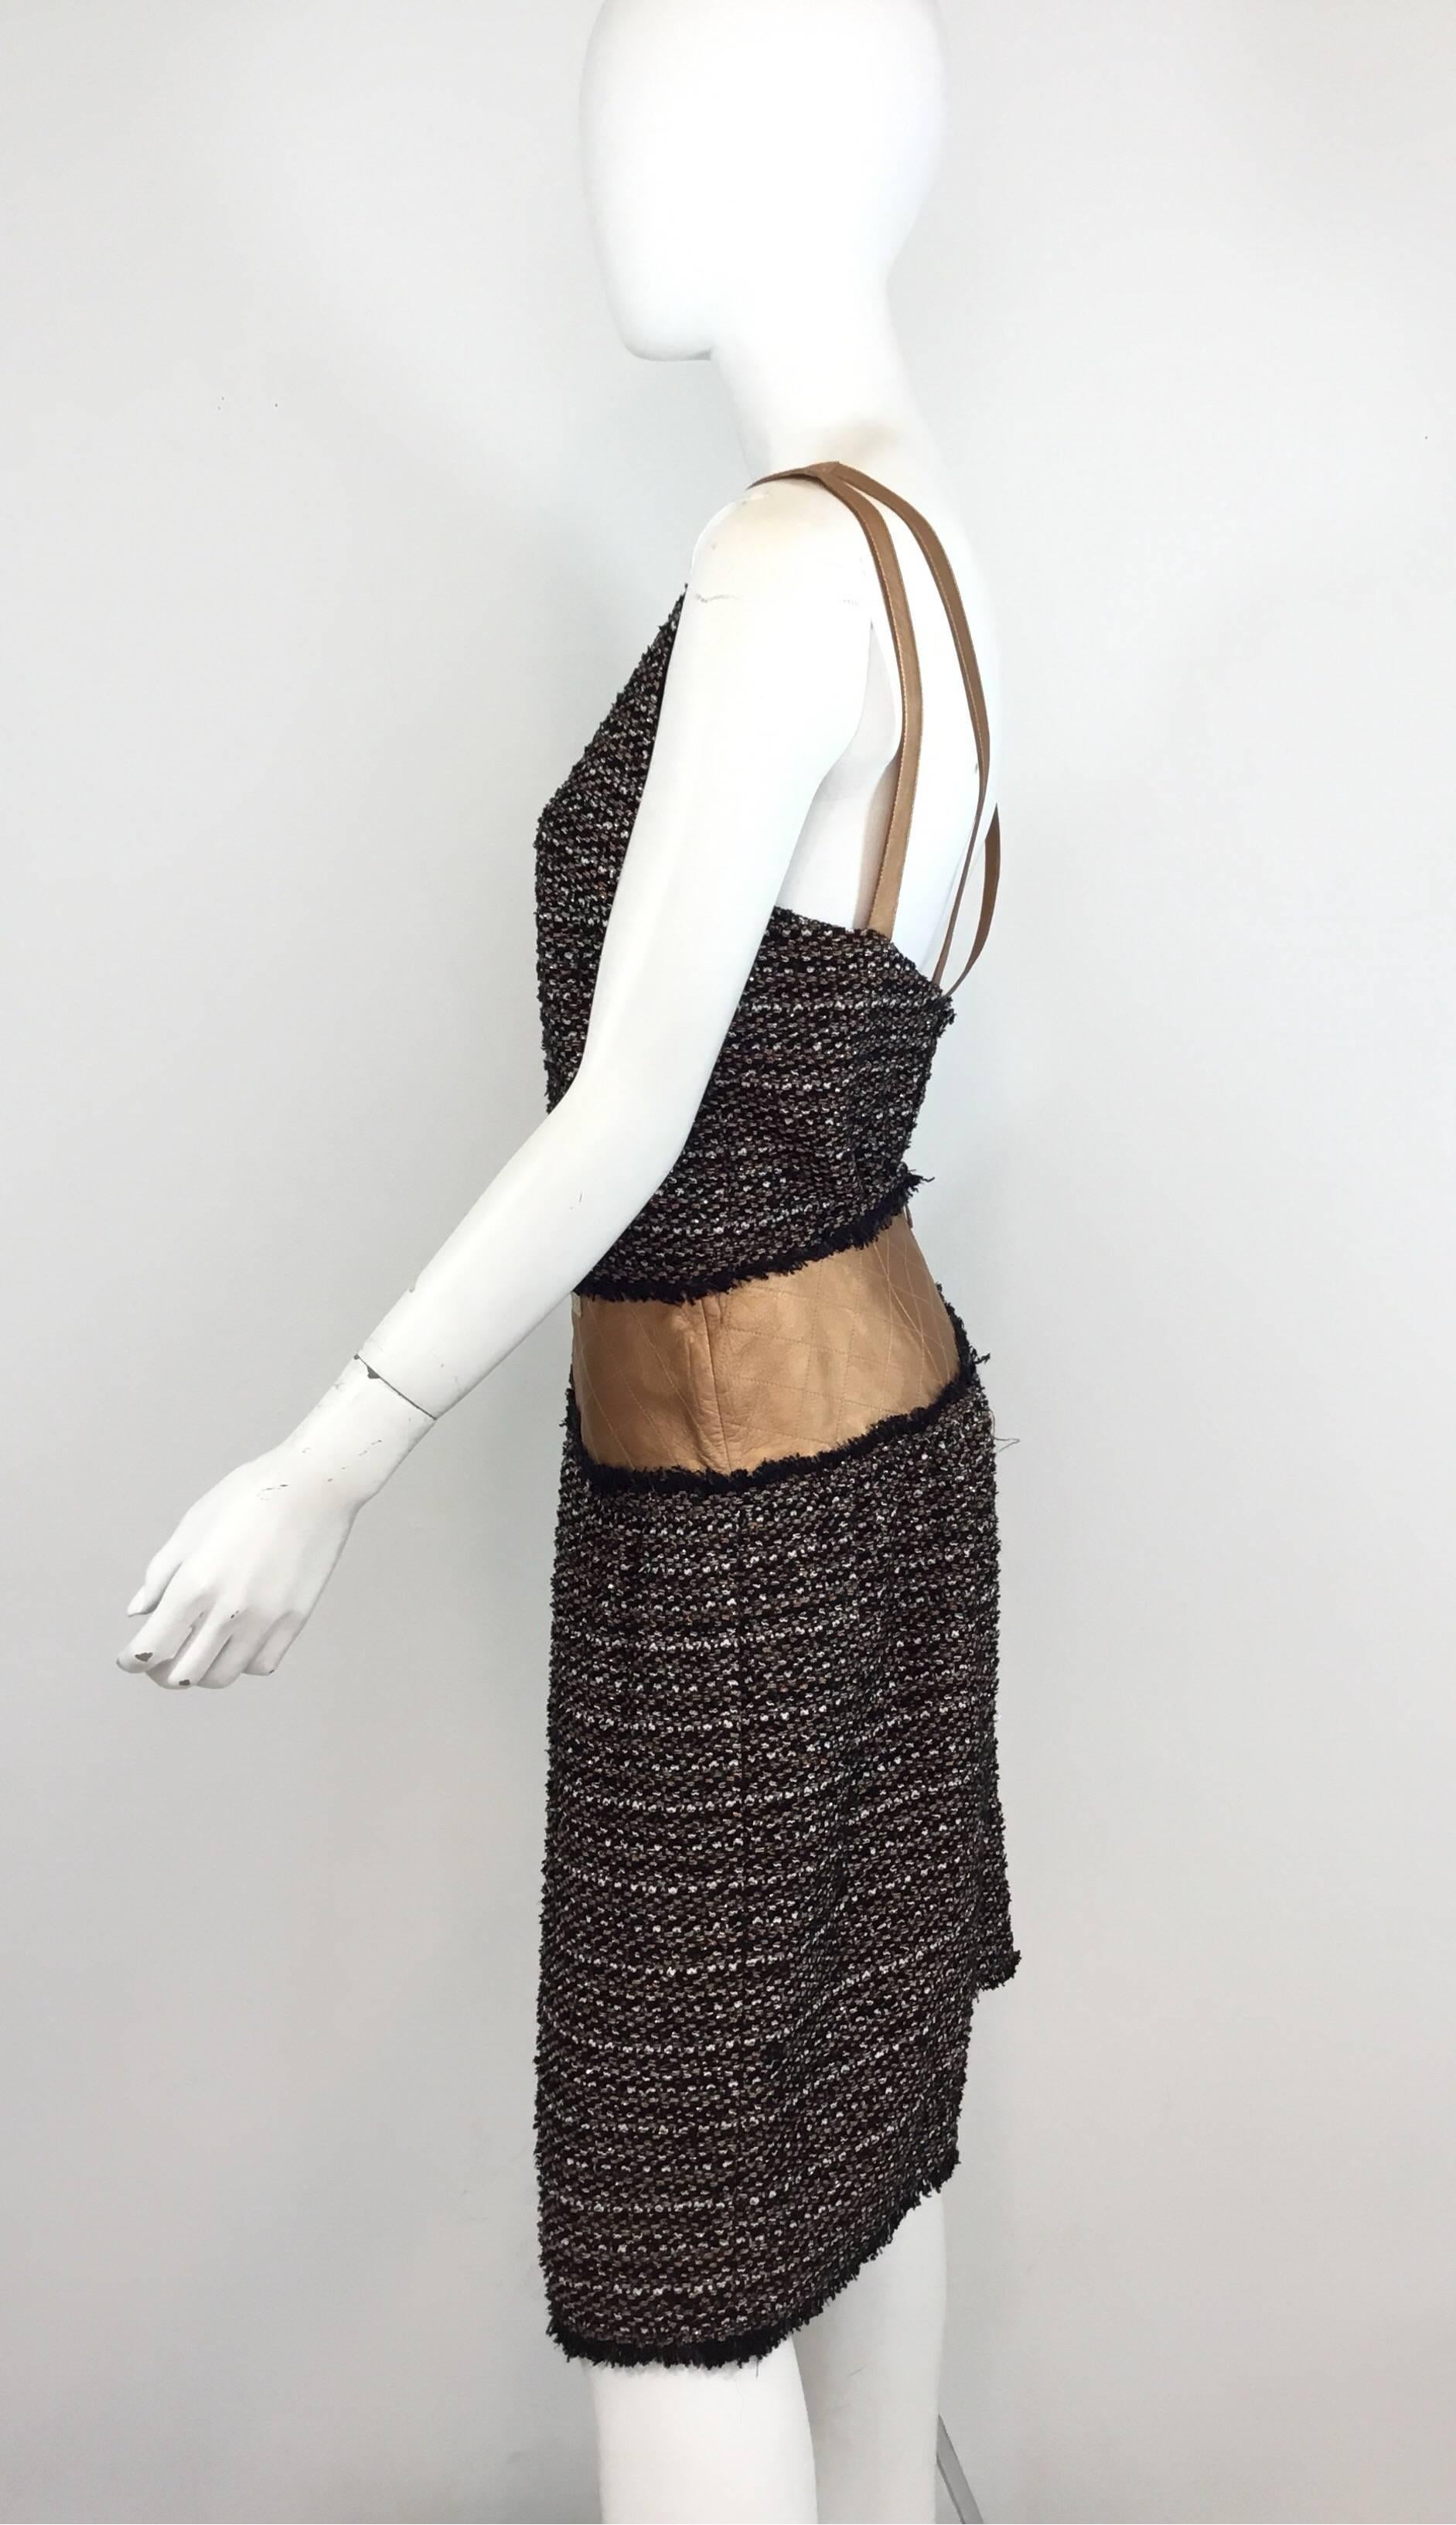 Chanel Fantasie Tweed-Rock Set aus 2005 A Kollektion. Der Rock hat einen kupferfarbenen Metallic-Lederbesatz an der Taille, einen Reißverschluss am Rücken und ist komplett gefüttert. Das Oberteil hat einen V-Ausschnitt, Lederriemen, einen